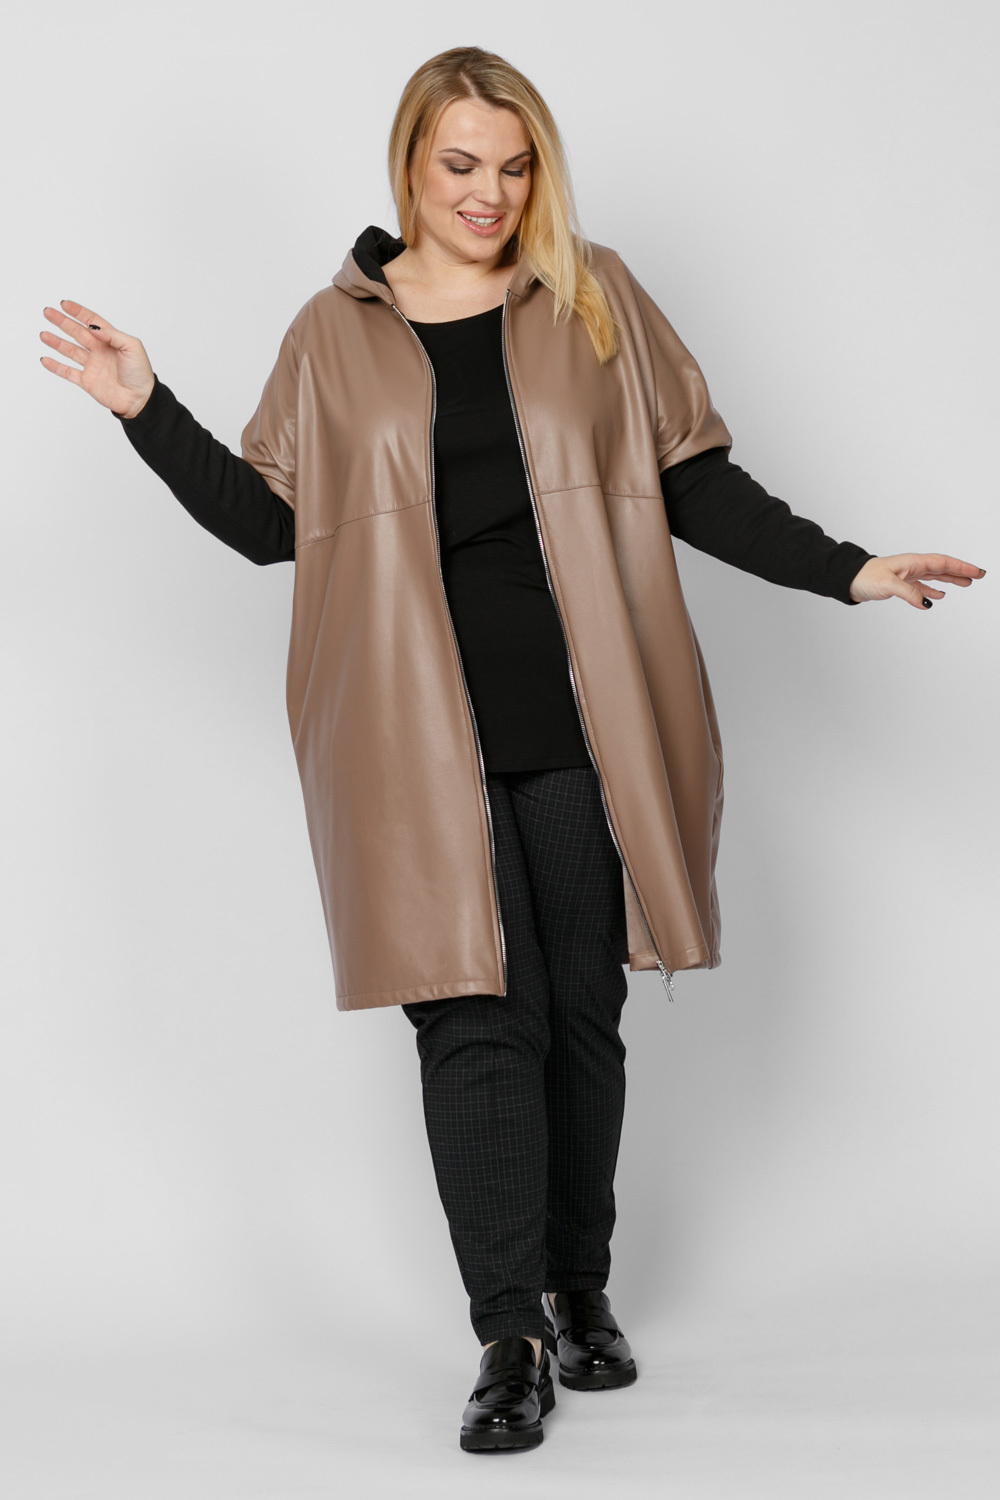 Пальто женское ARTESSA PL10209BRW19 коричневое 60-62 RU